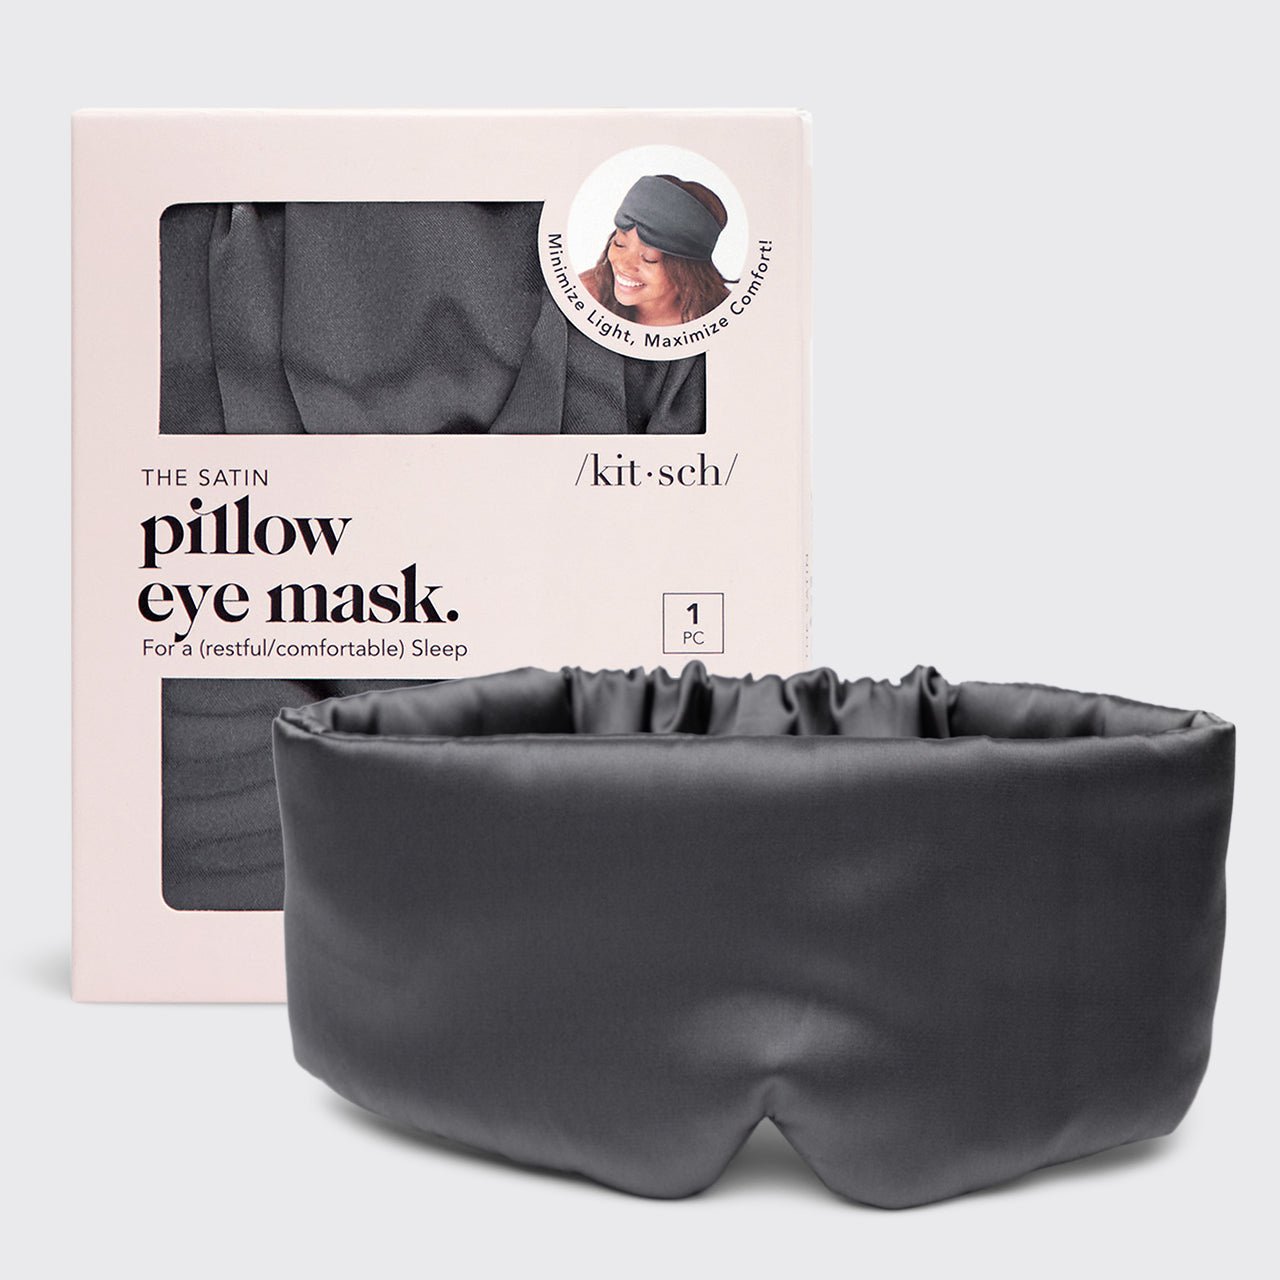 La maschera per occhi a cuscino - Carbone